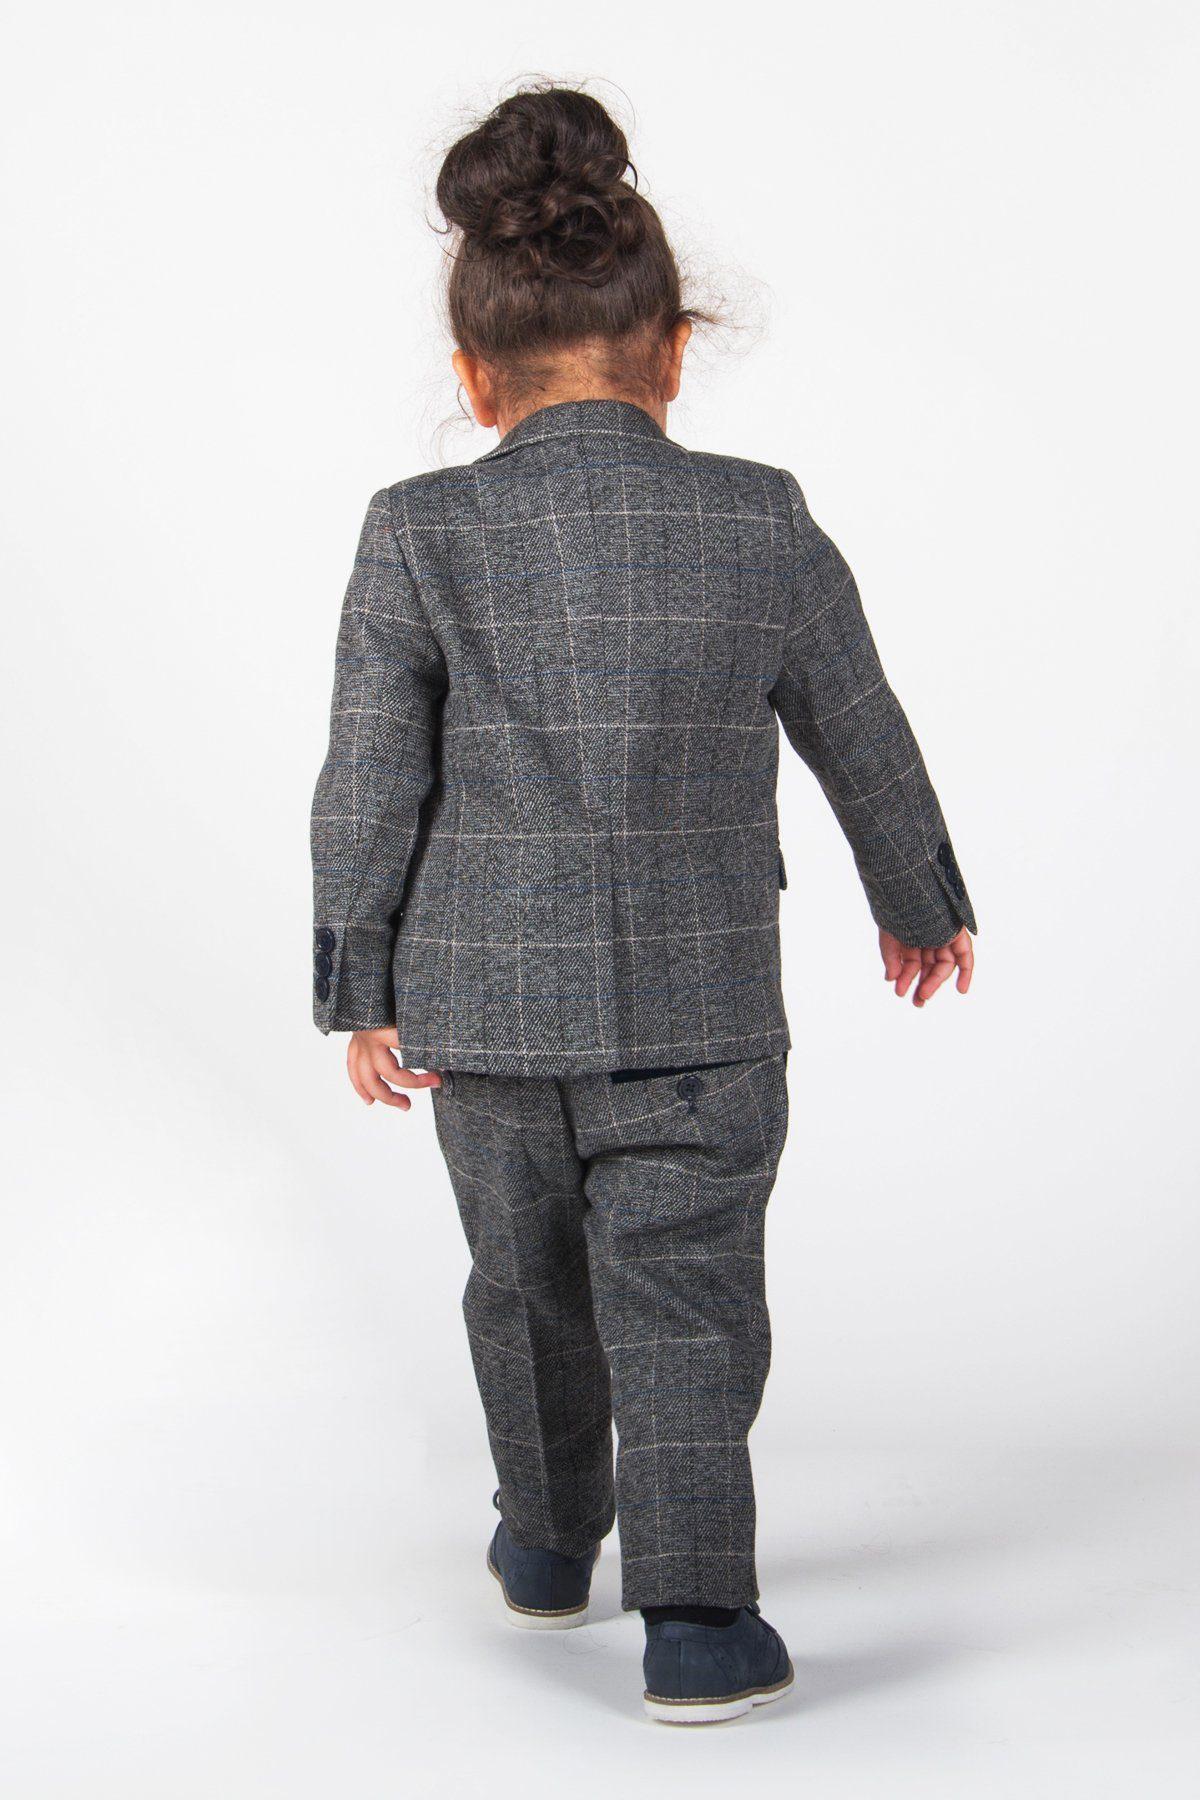 SCOTT - Childrens Grey Check Three Piece Suit